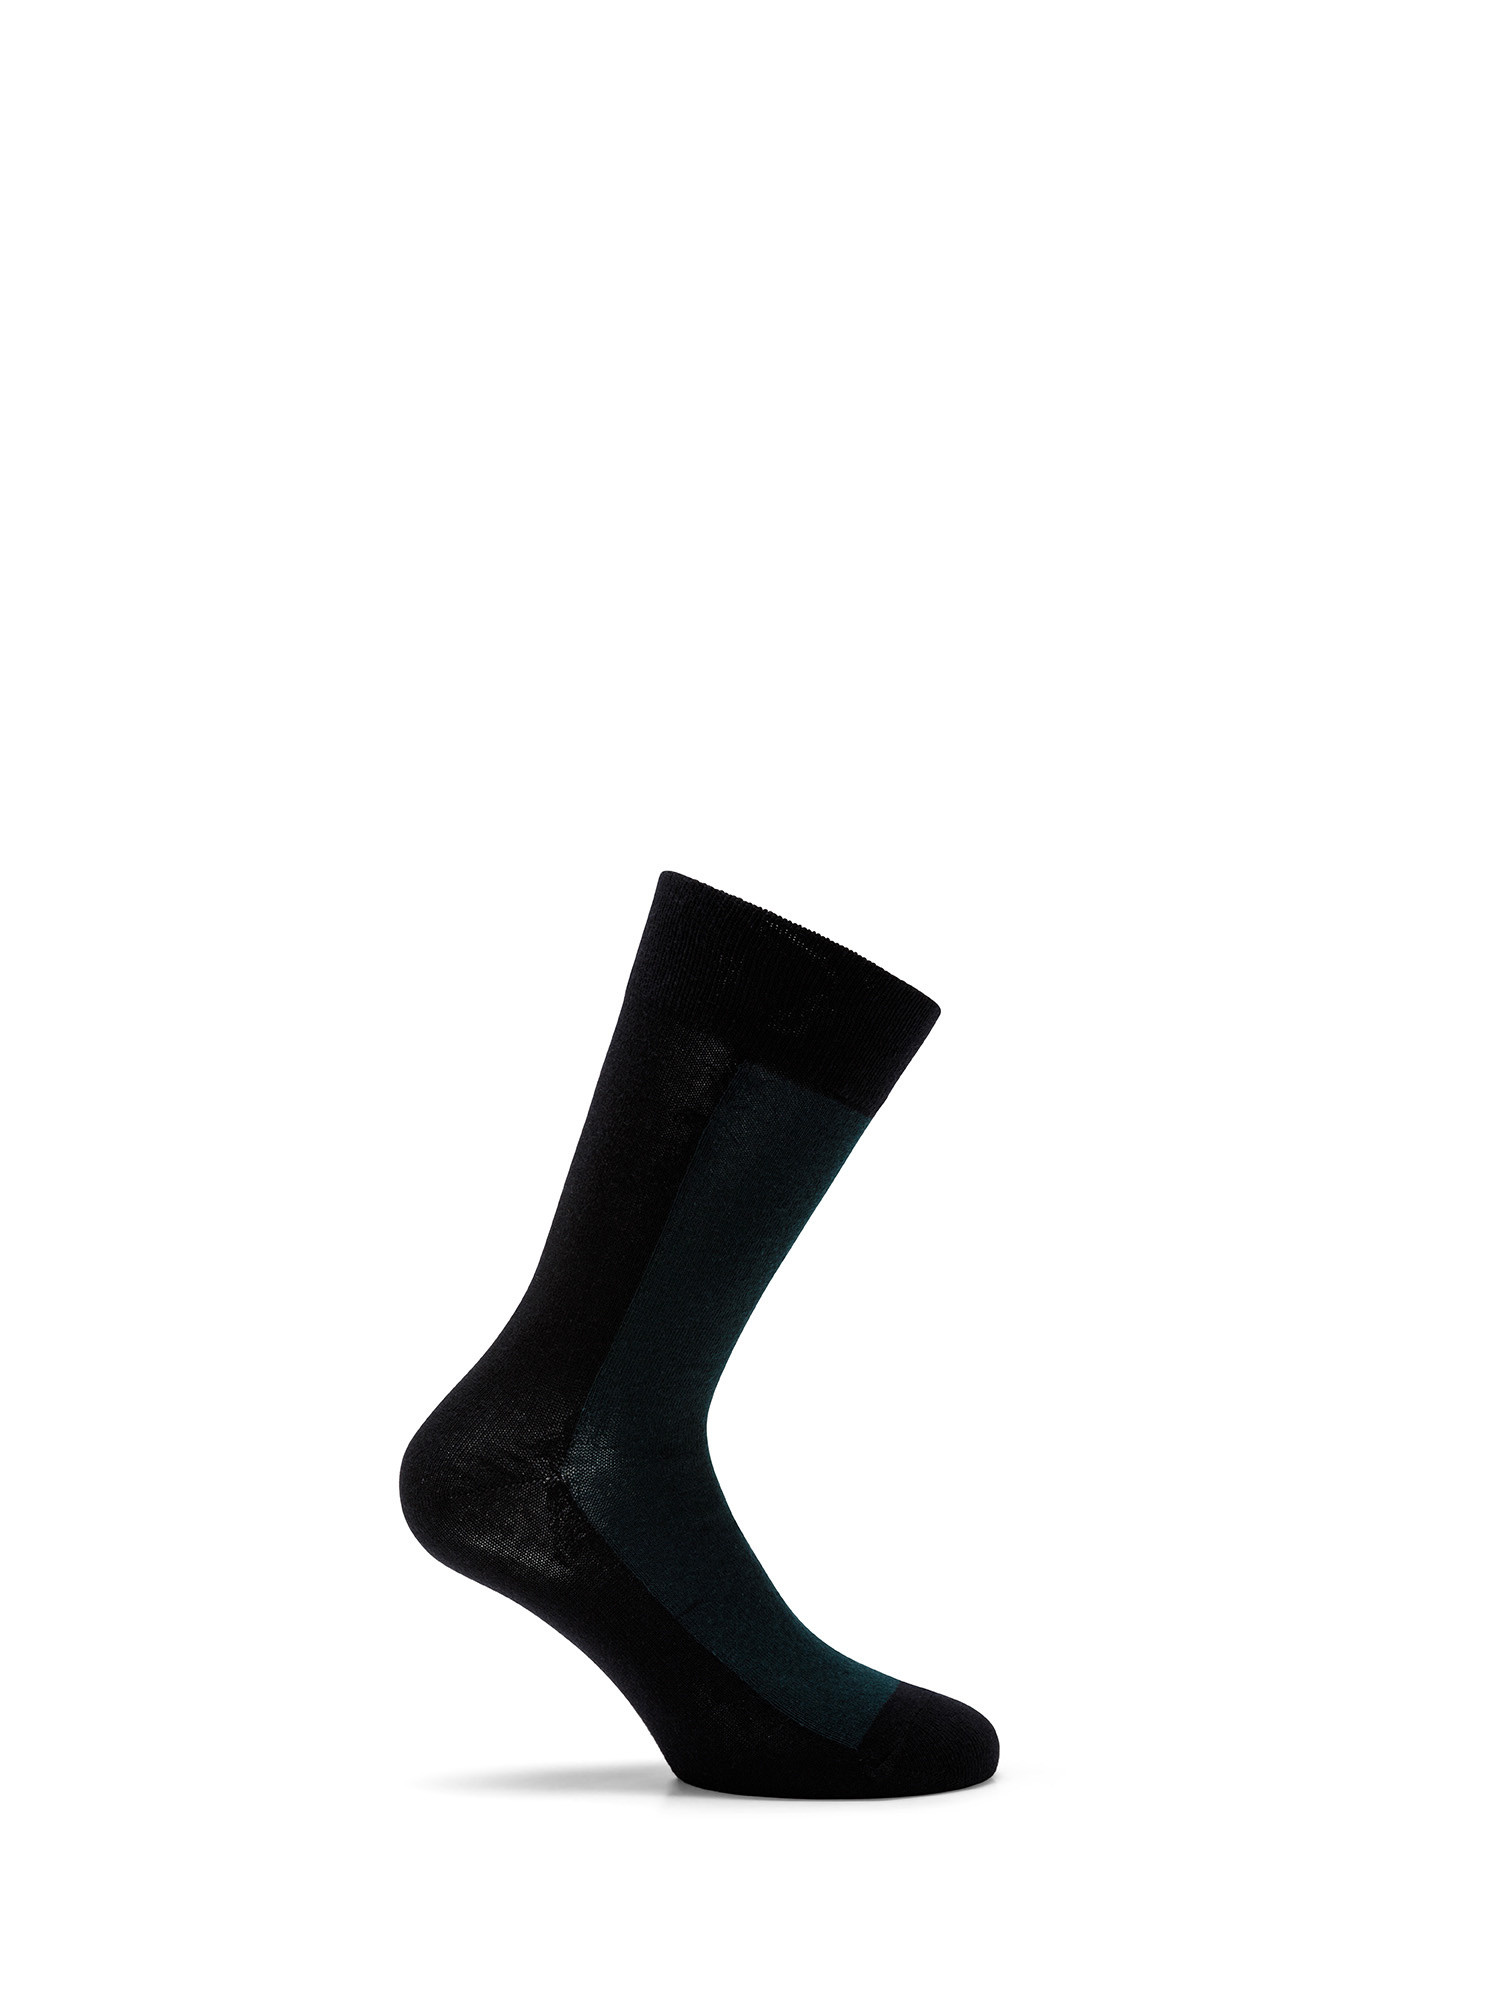 Luca D'Altieri - Set of 3 patterned short socks, Dark Blue, large image number 1